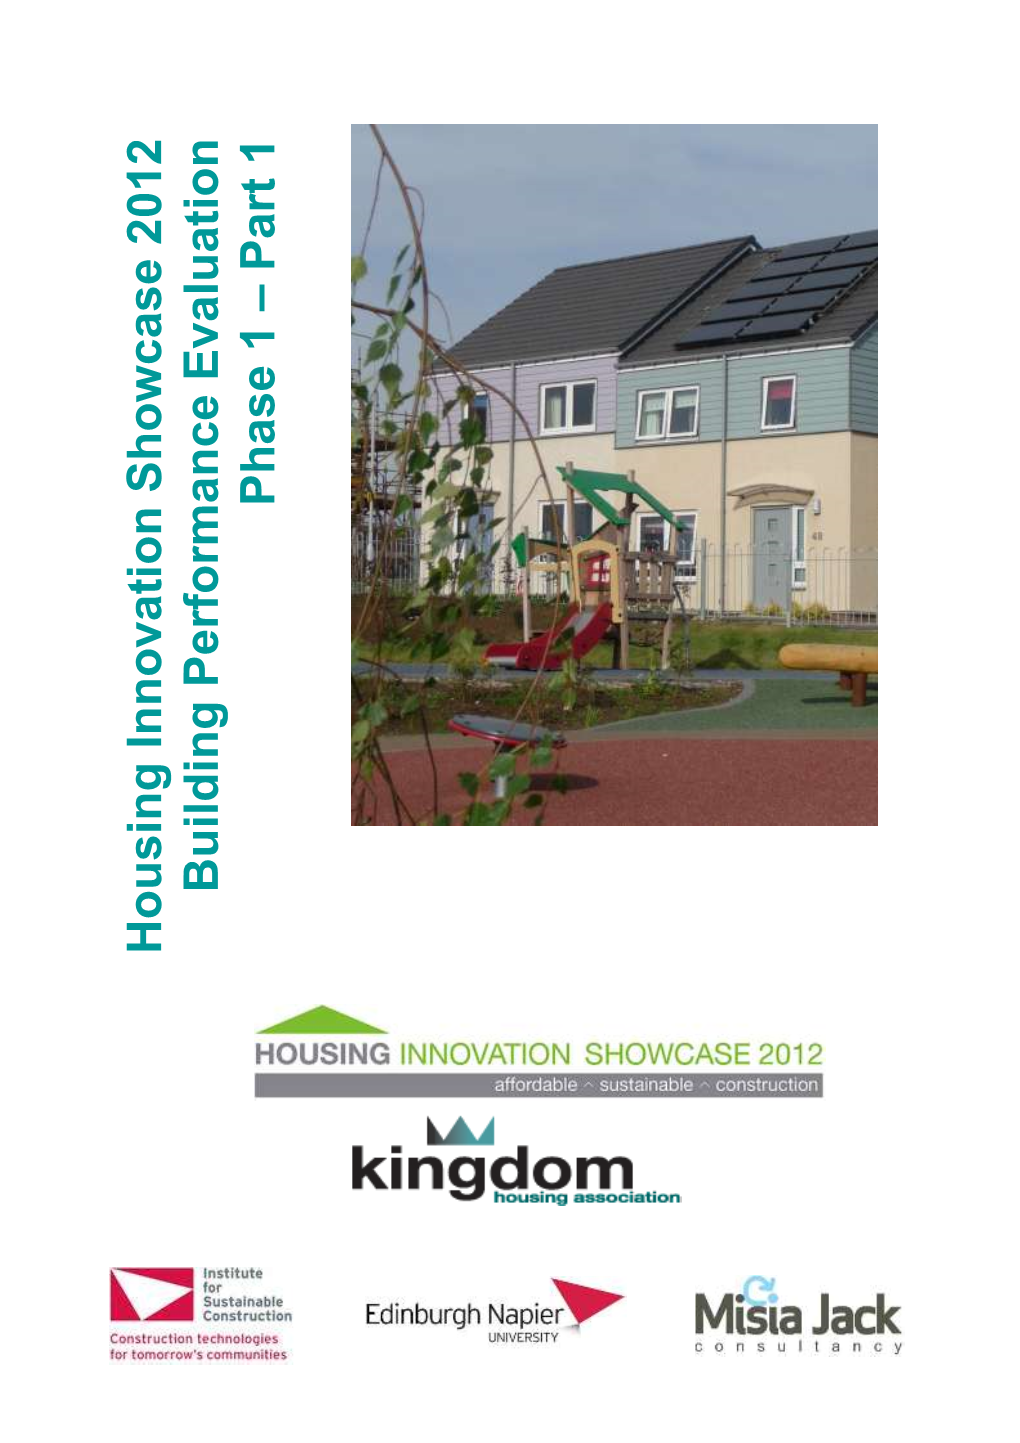 Housing Innovation Showcase 2012